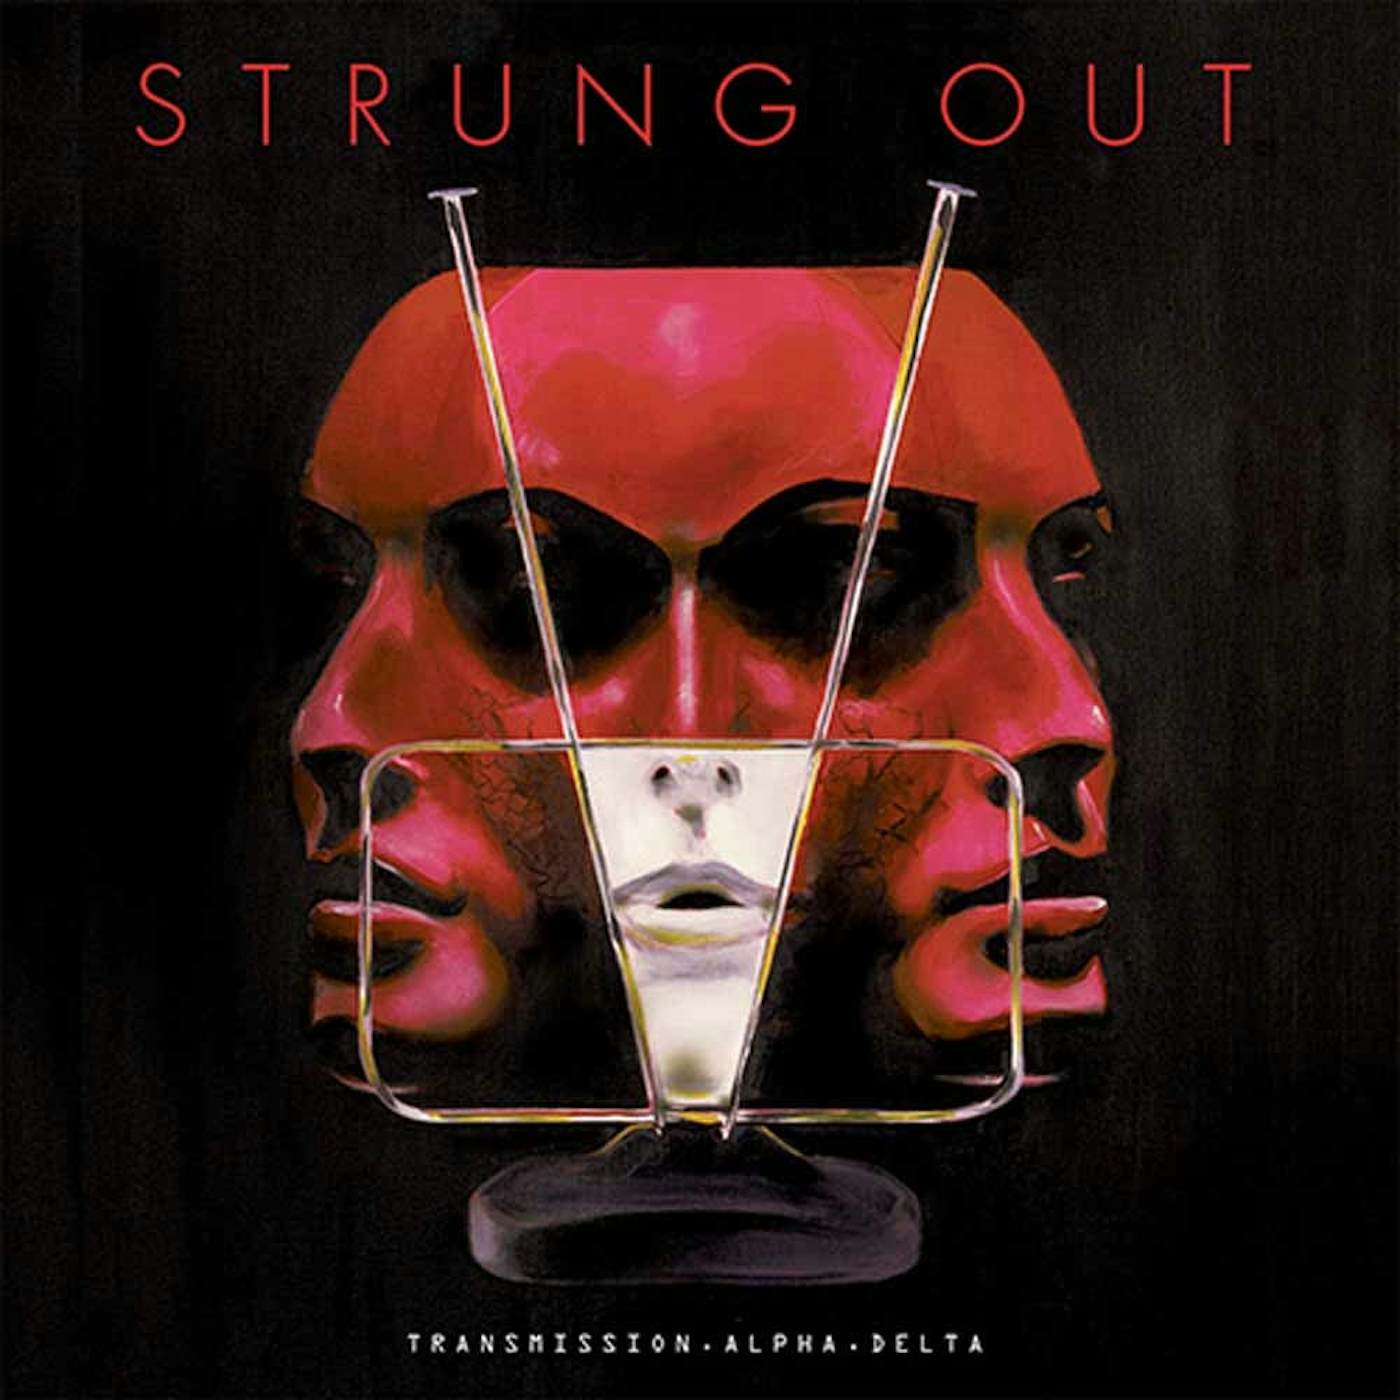 Strung Out LP - Transmission.Alpha.Delta (Vinyl)